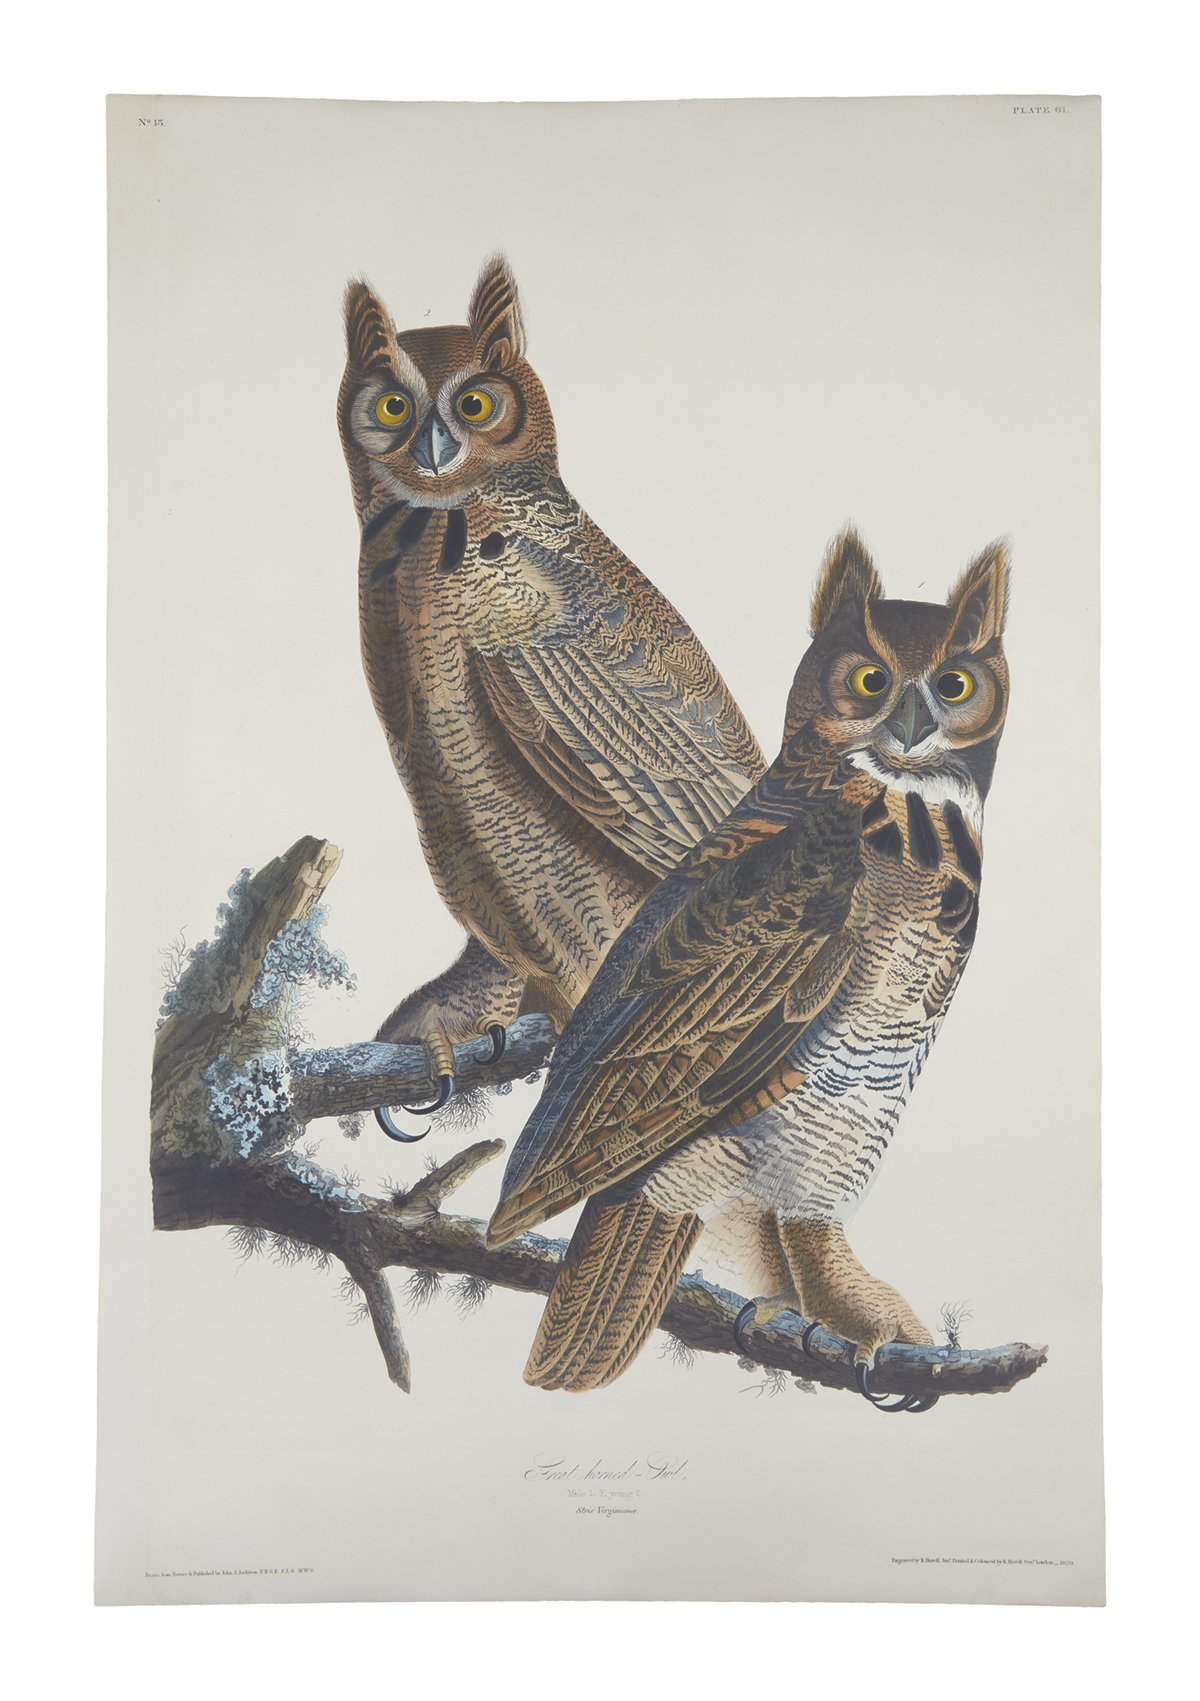 AUDUBON, JOHN JAMES. Great Horned Owl. Plate 61. [Variant 1.]